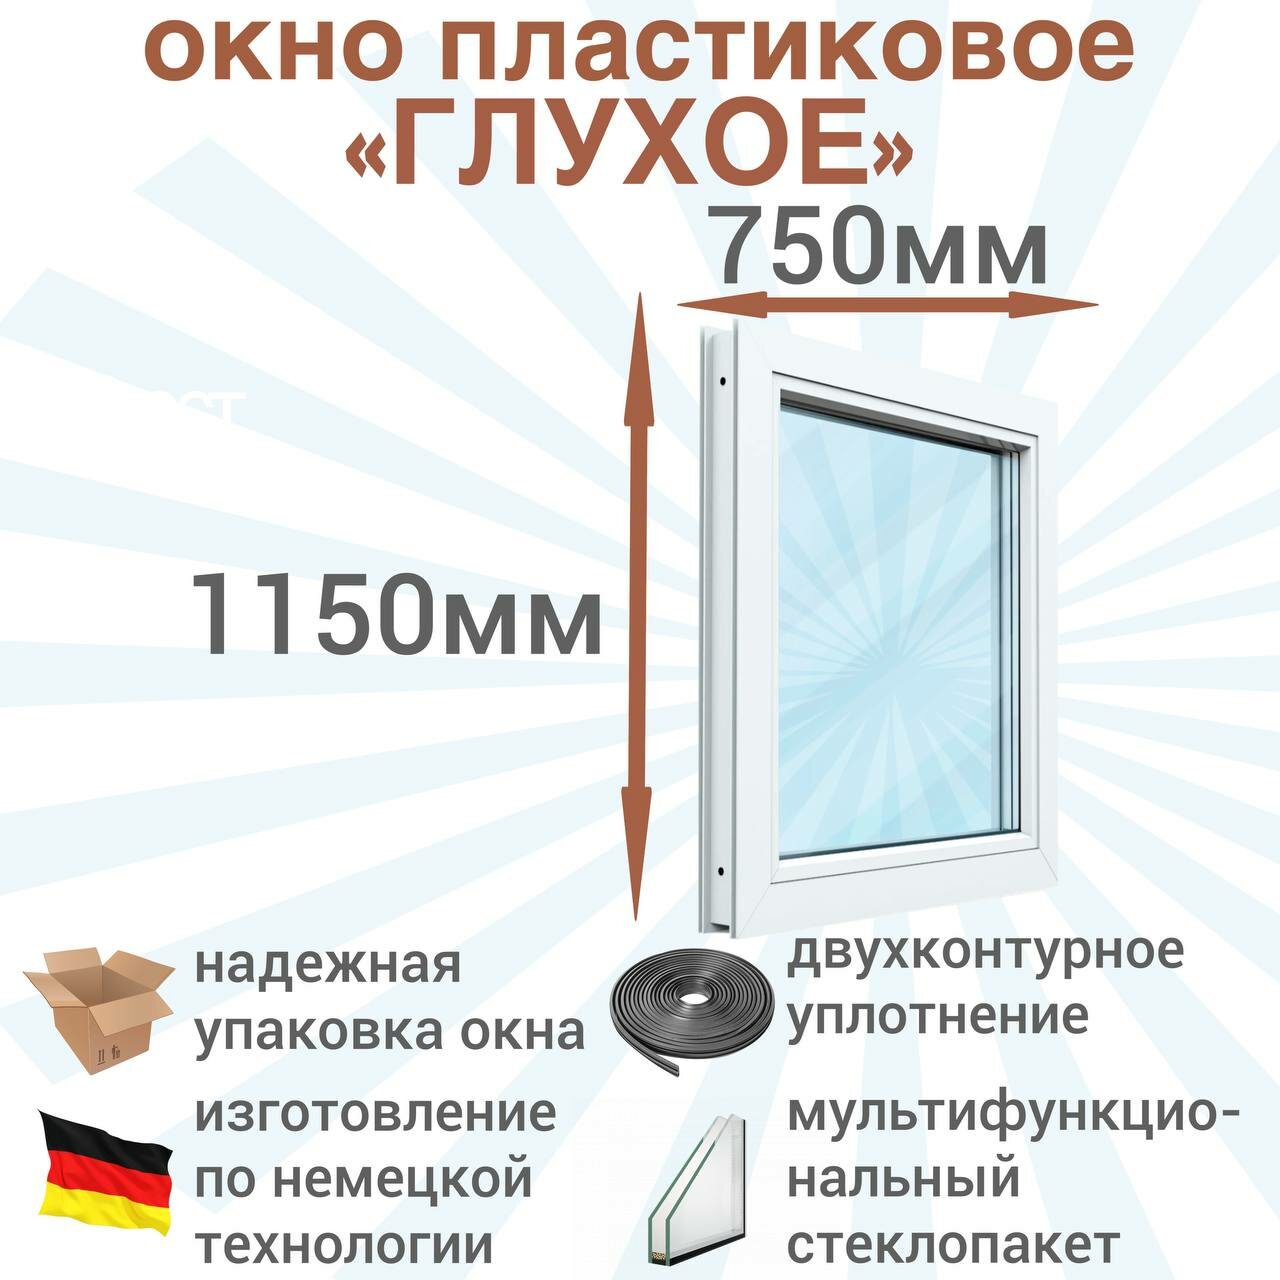 Окно ПВХ глухое РЕХАУ (Ш х В) 750 х 1150 мм. Пластиковое окно 60 серии с мультифункциональным стеклопакетом.